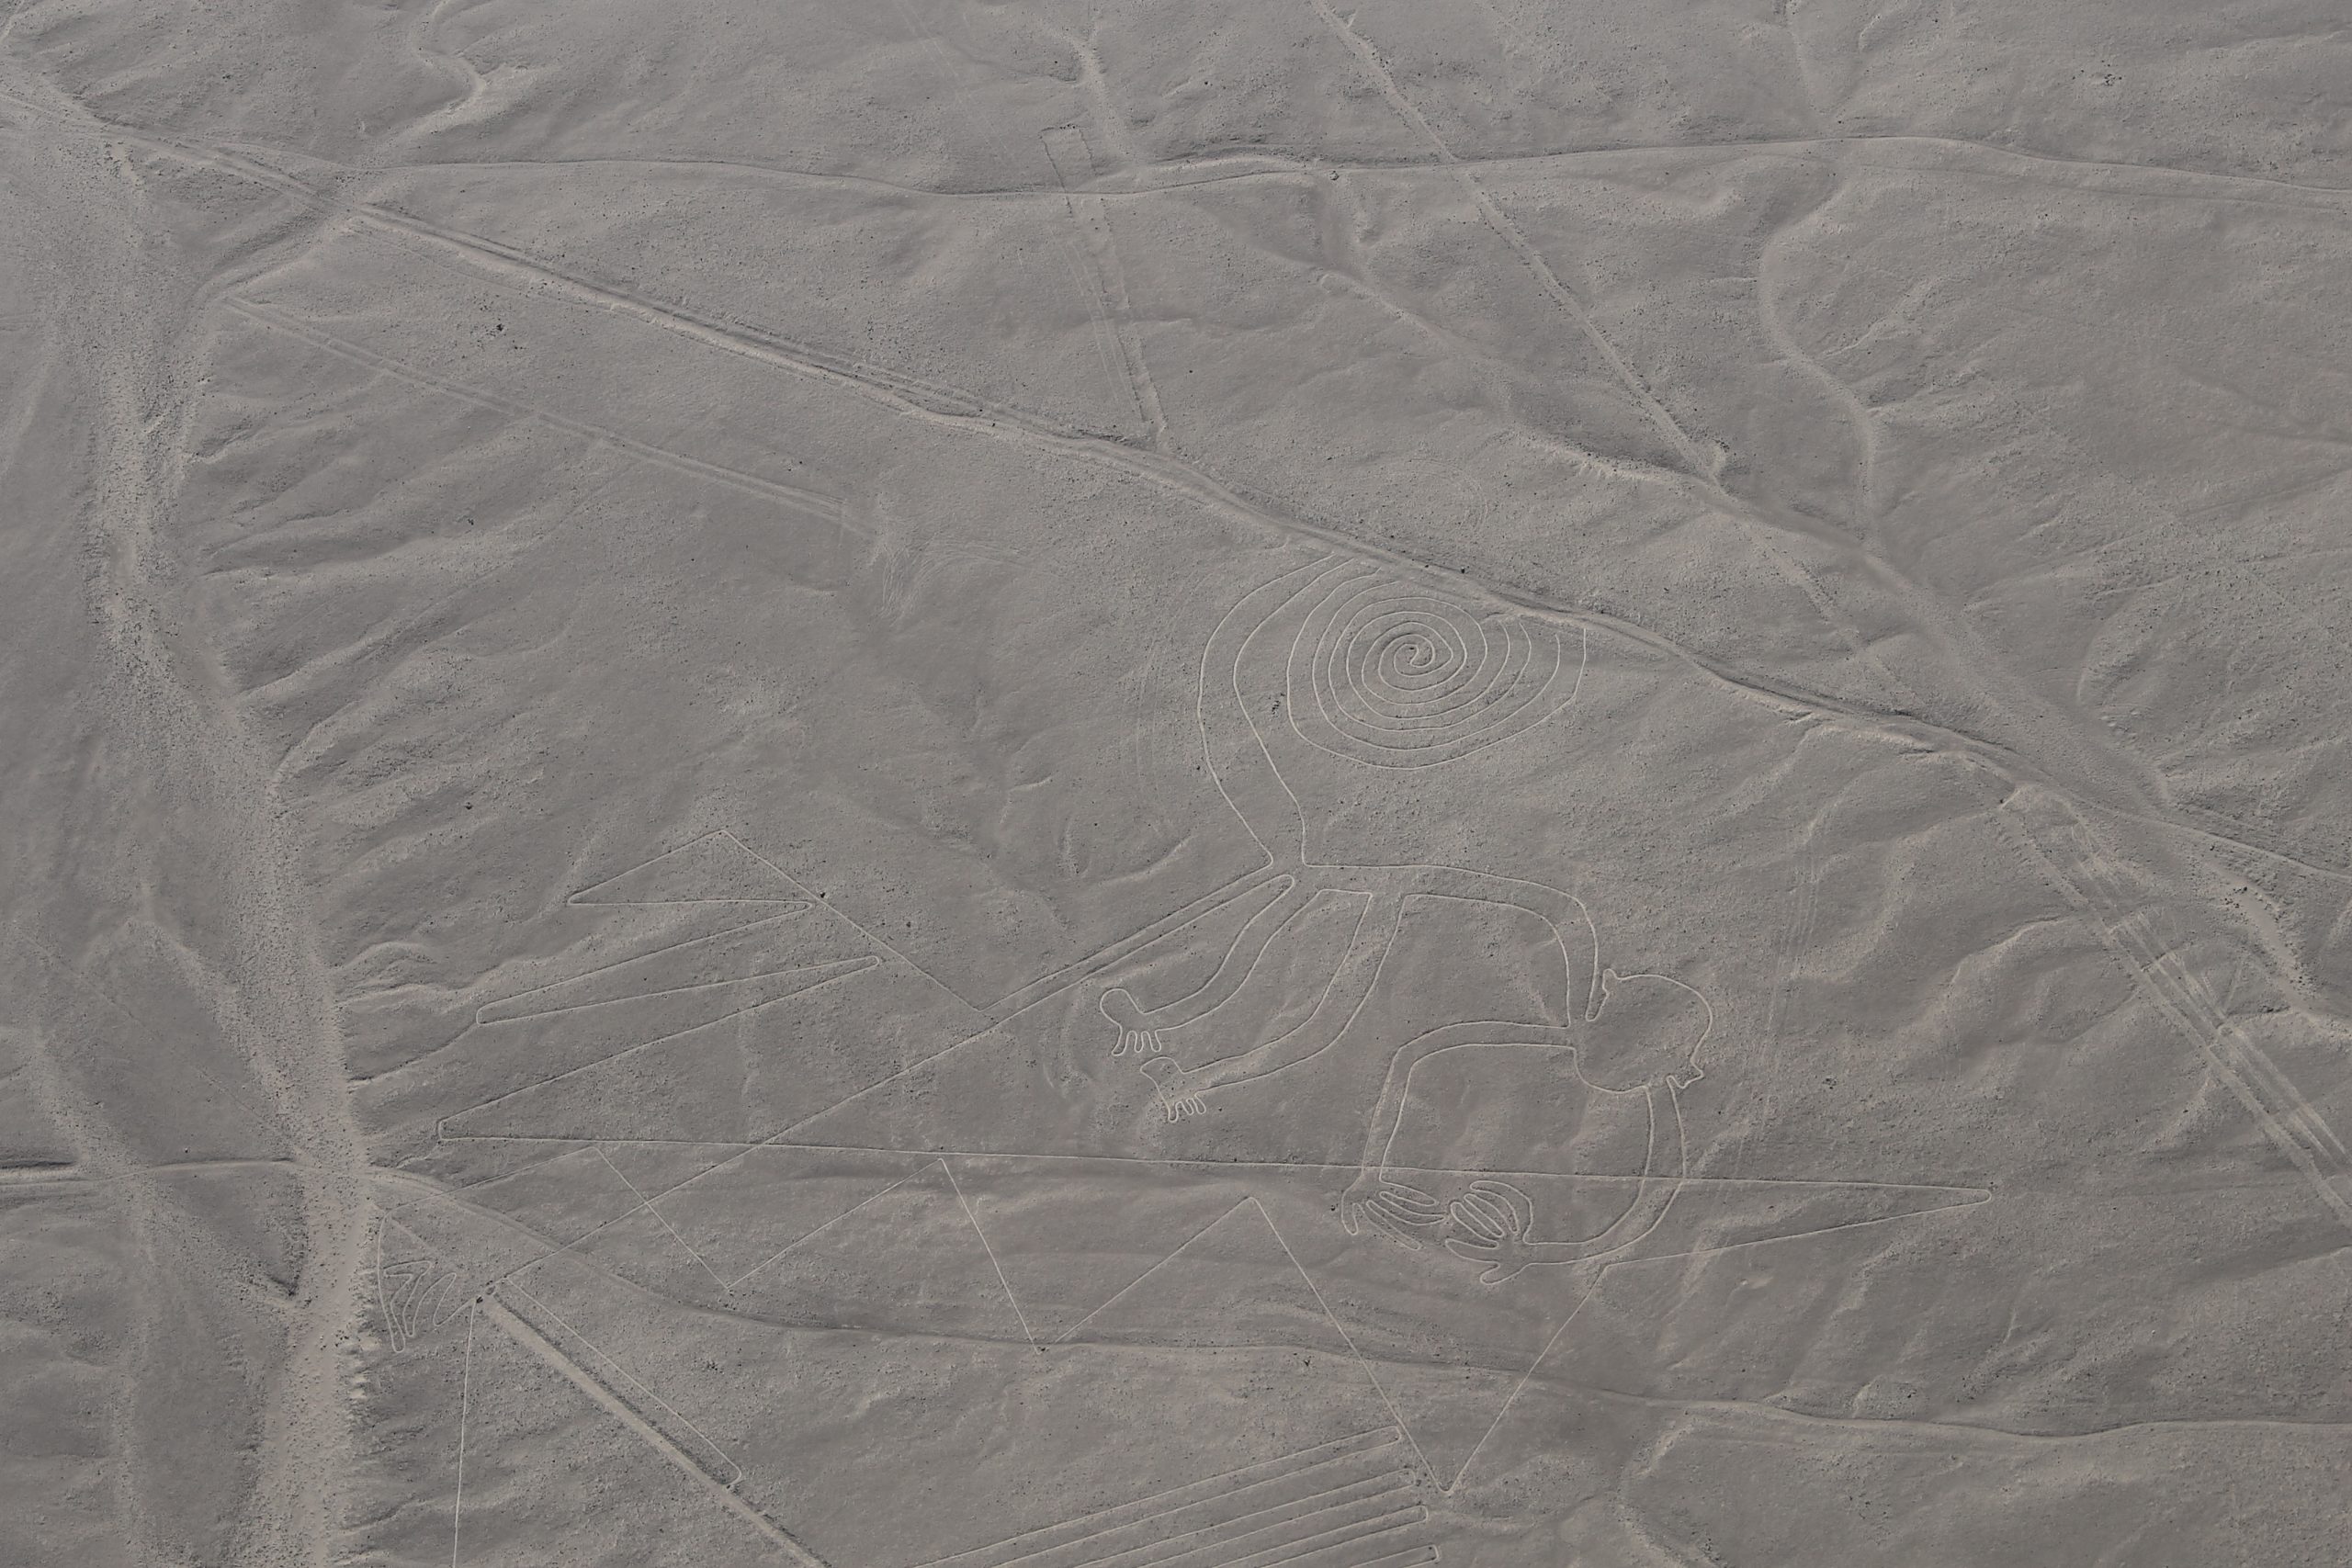 You are currently viewing Ein Flug über die rätselhaften Linien von Nazca